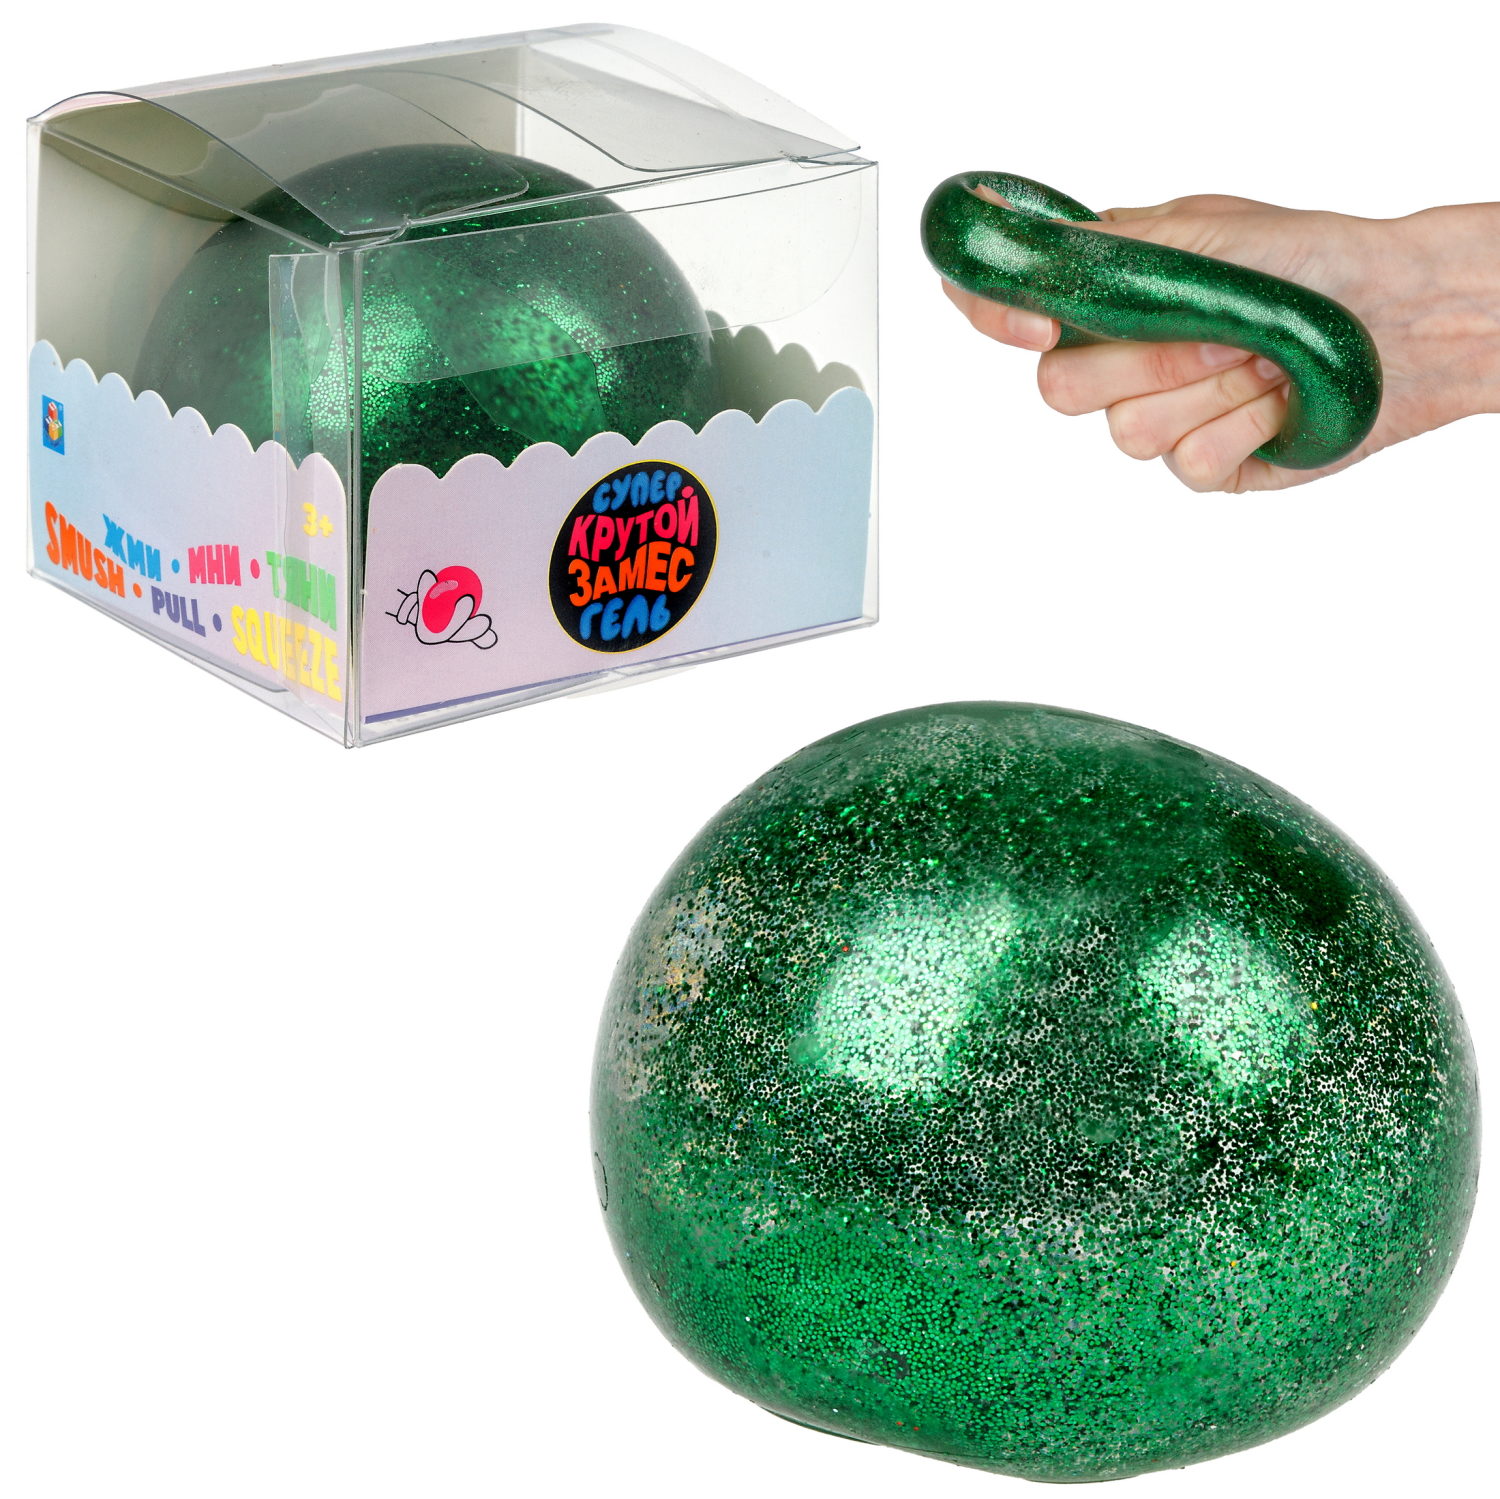 Игрушка-антистресс 1toy Крутой замес Супергель зелёный шар блестки 6см